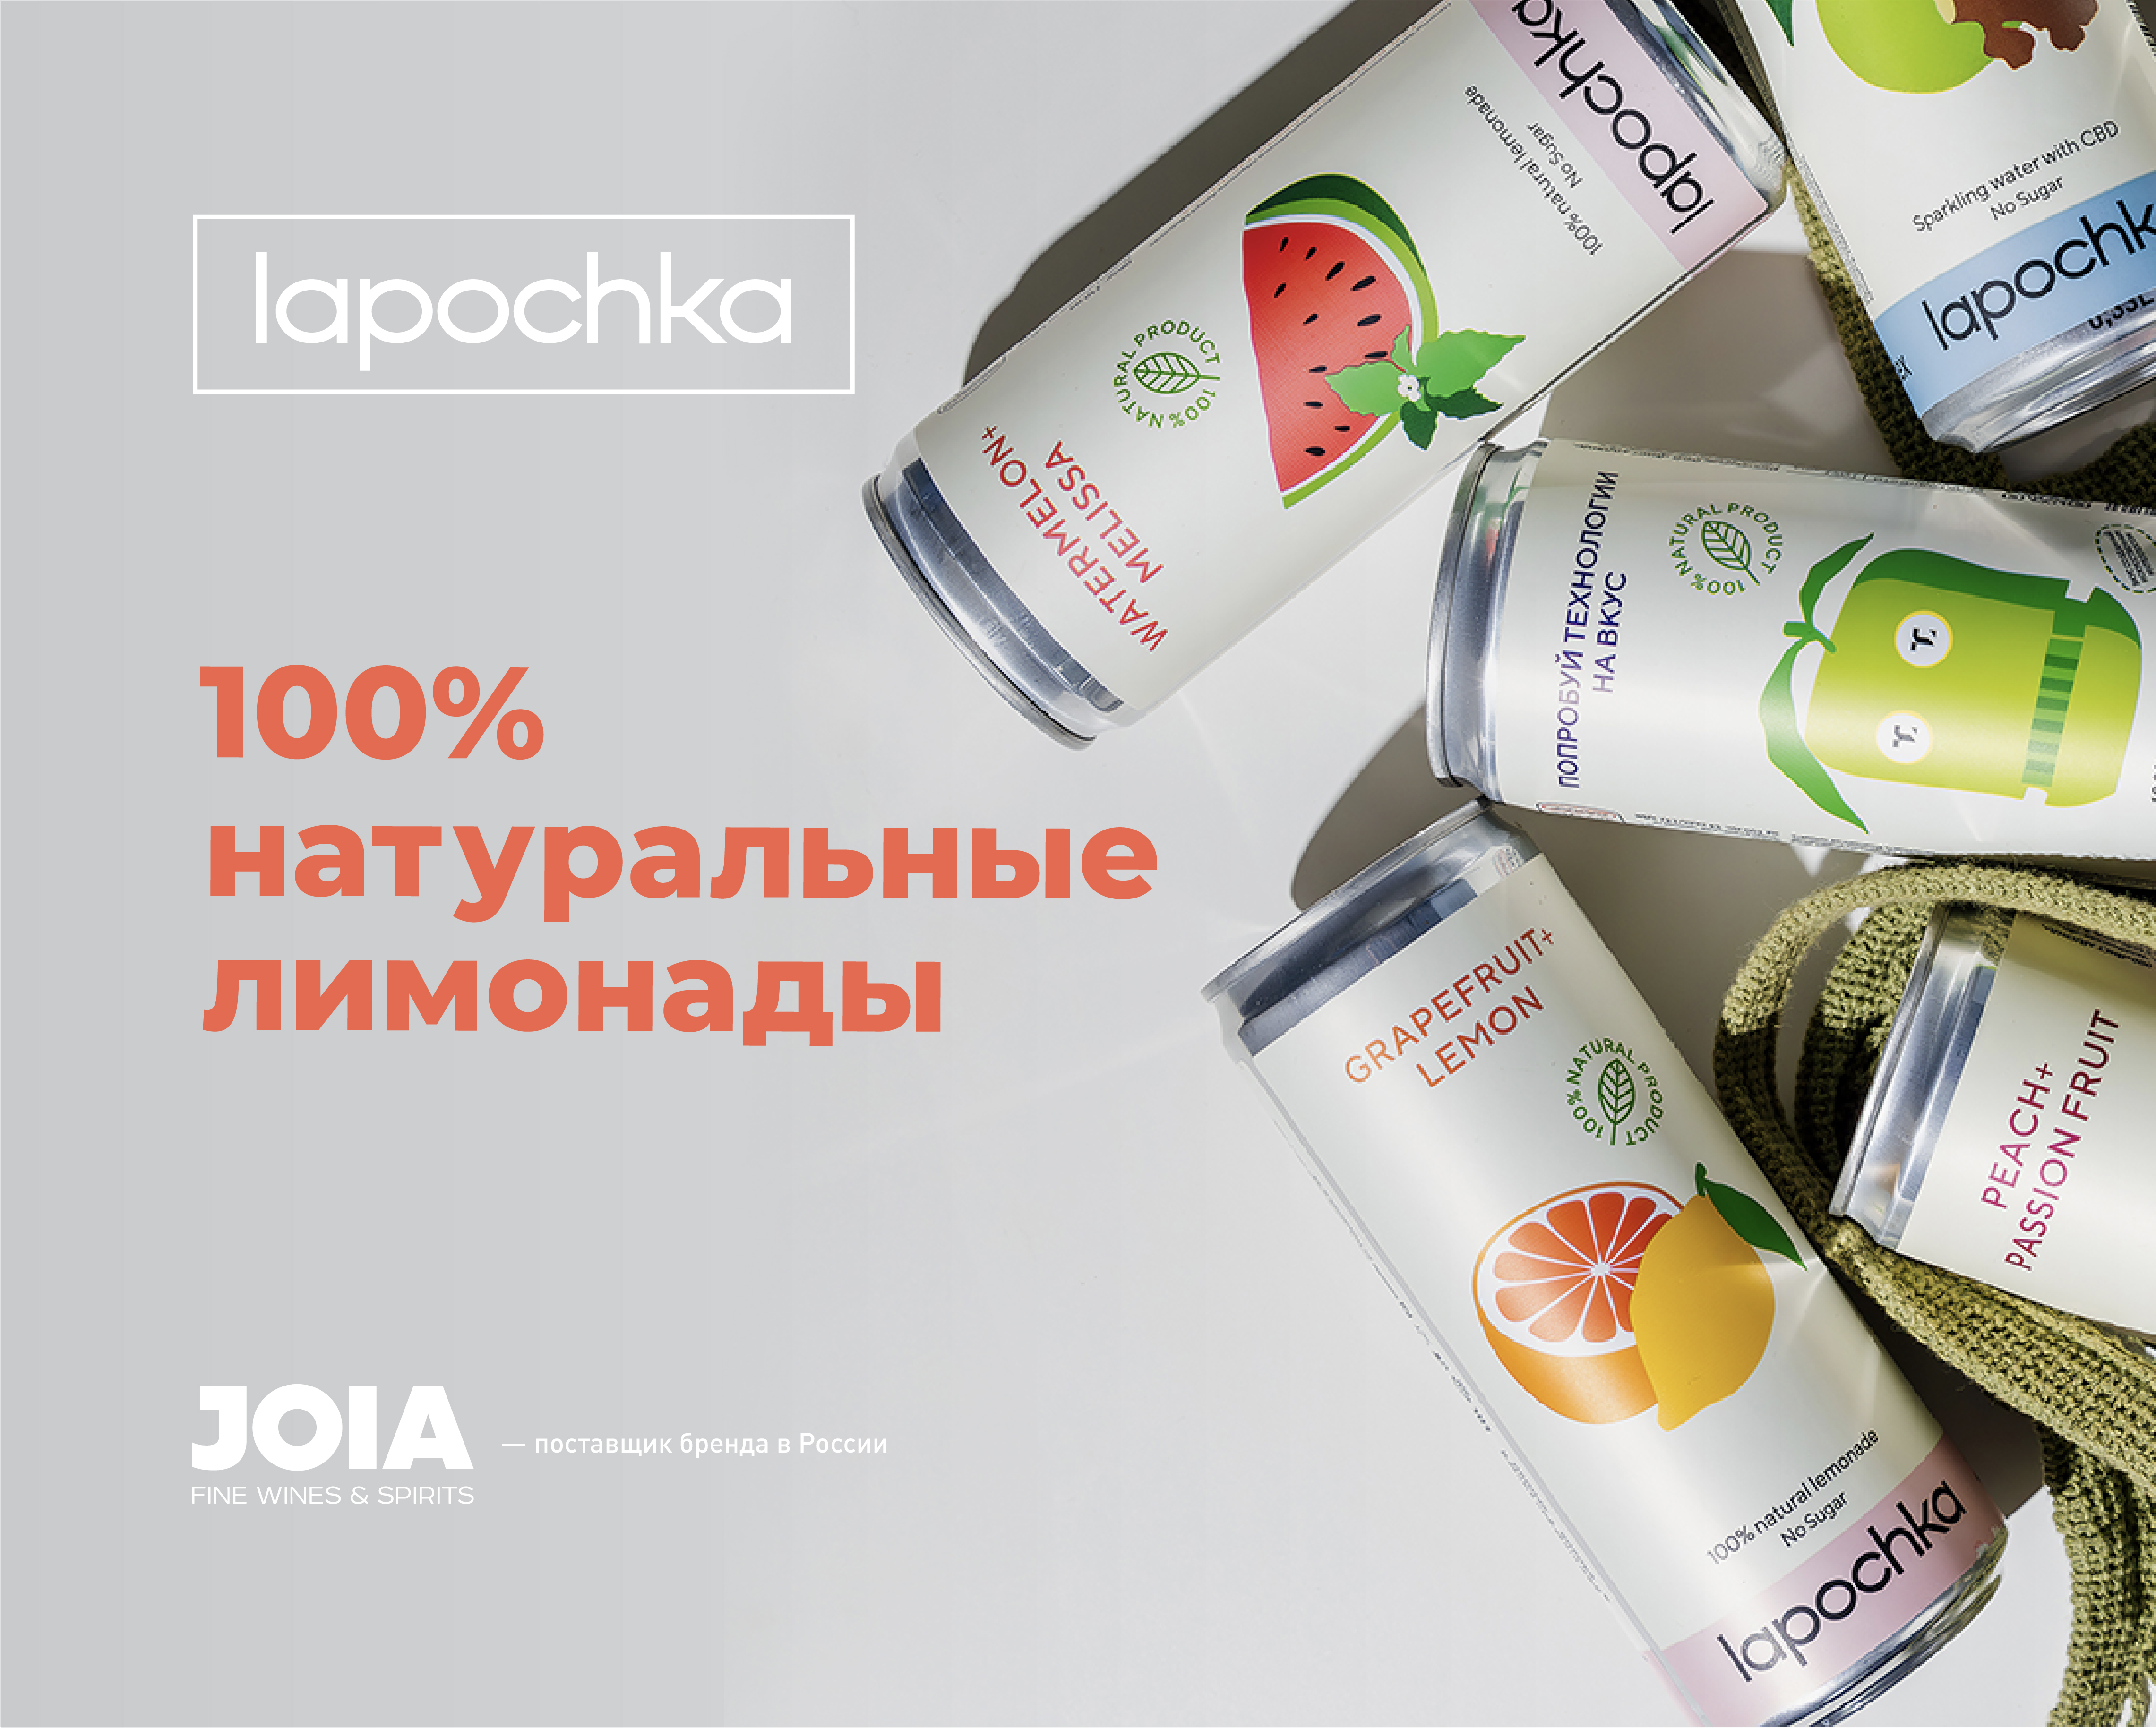 Lapochka (лимонад)